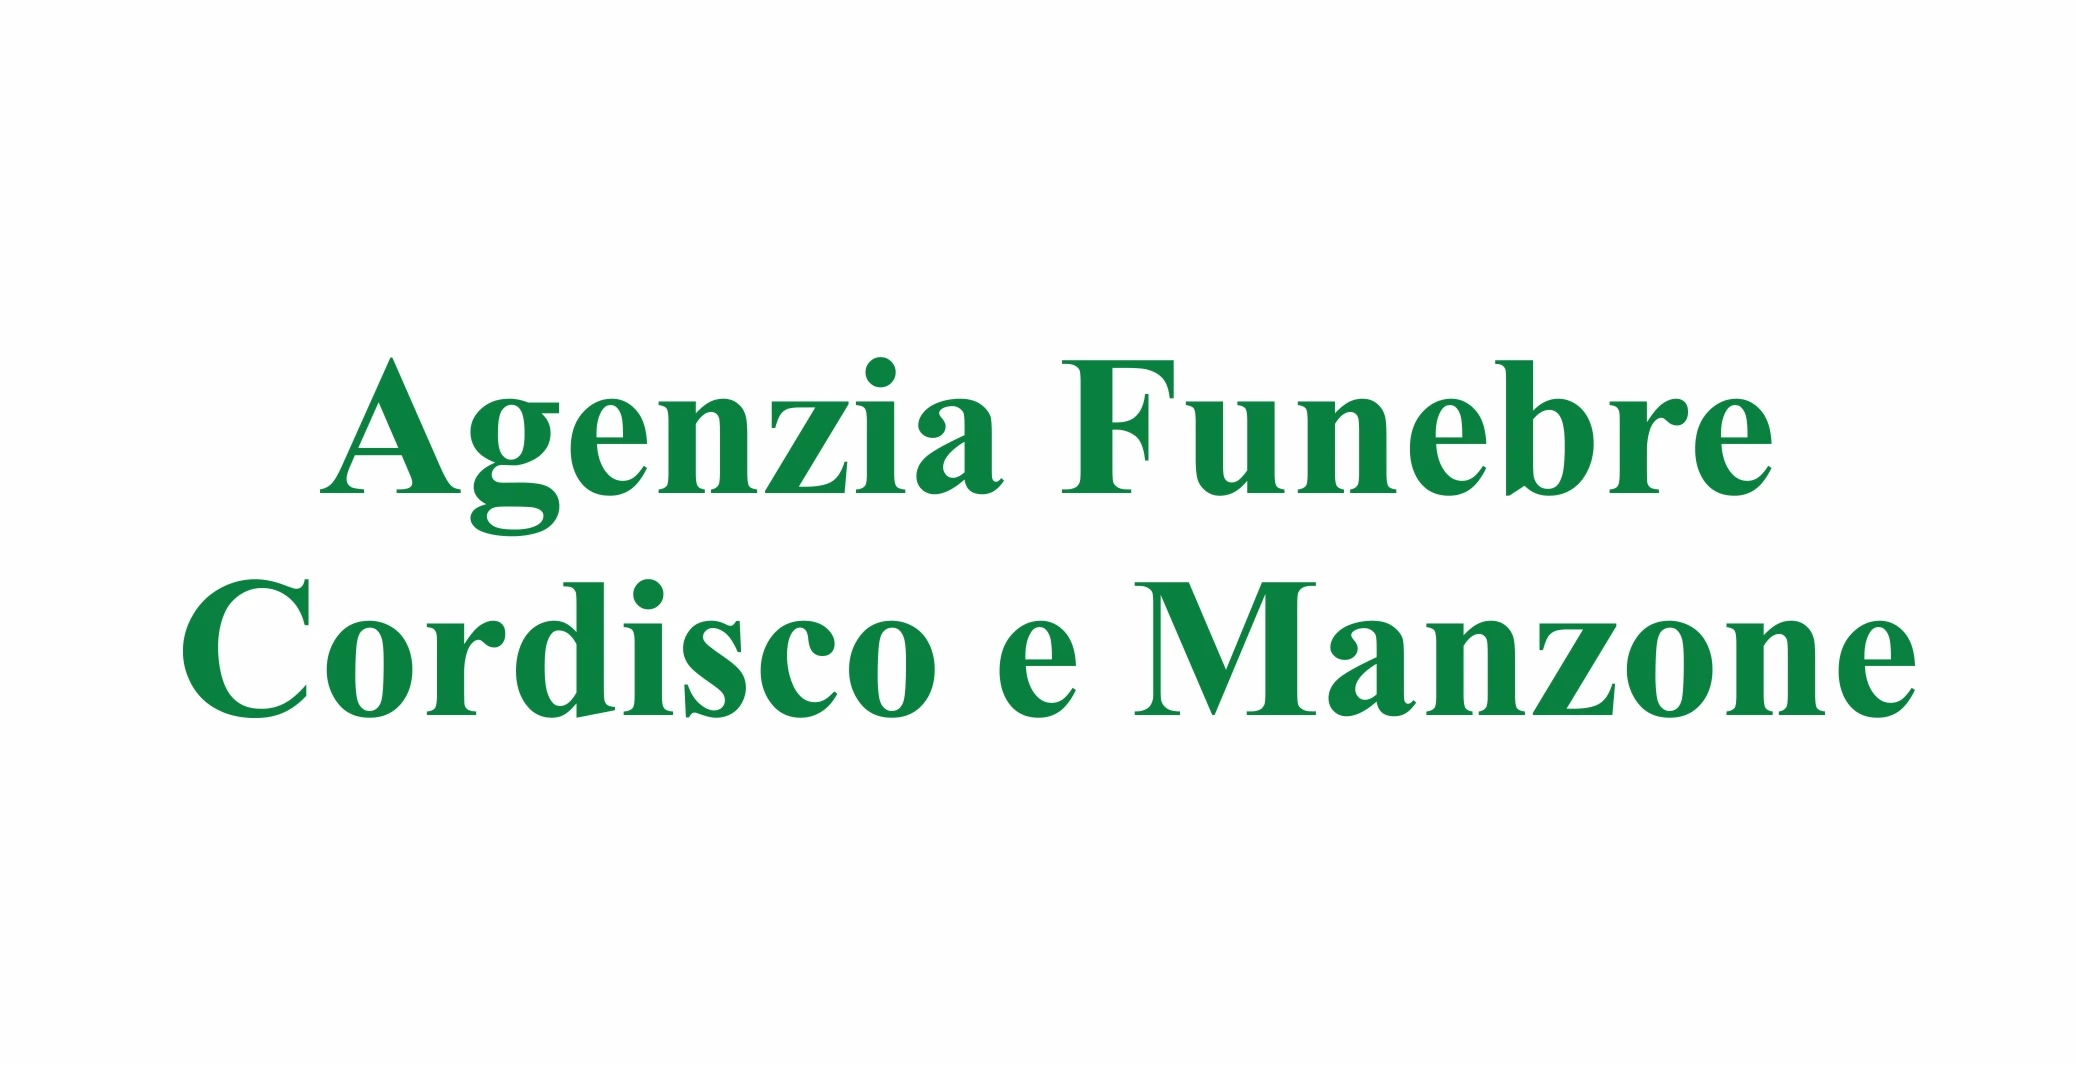 Servizio Funebre completo - Onoranze Funebri Cordisco e Manzone